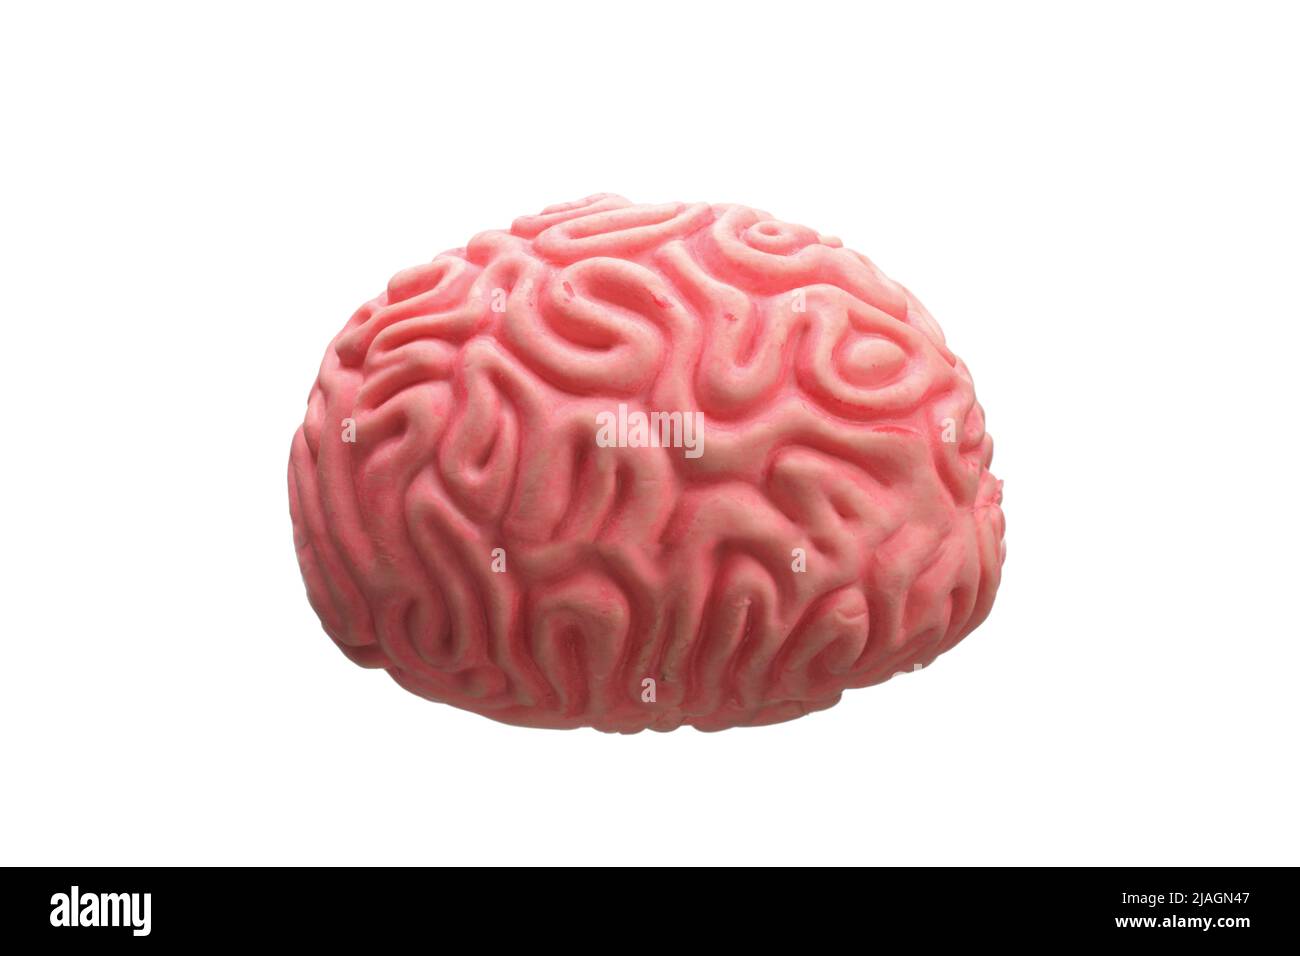 Modell eines menschlichen Gehirns auf weißem Hintergrund isoliert Stockfoto